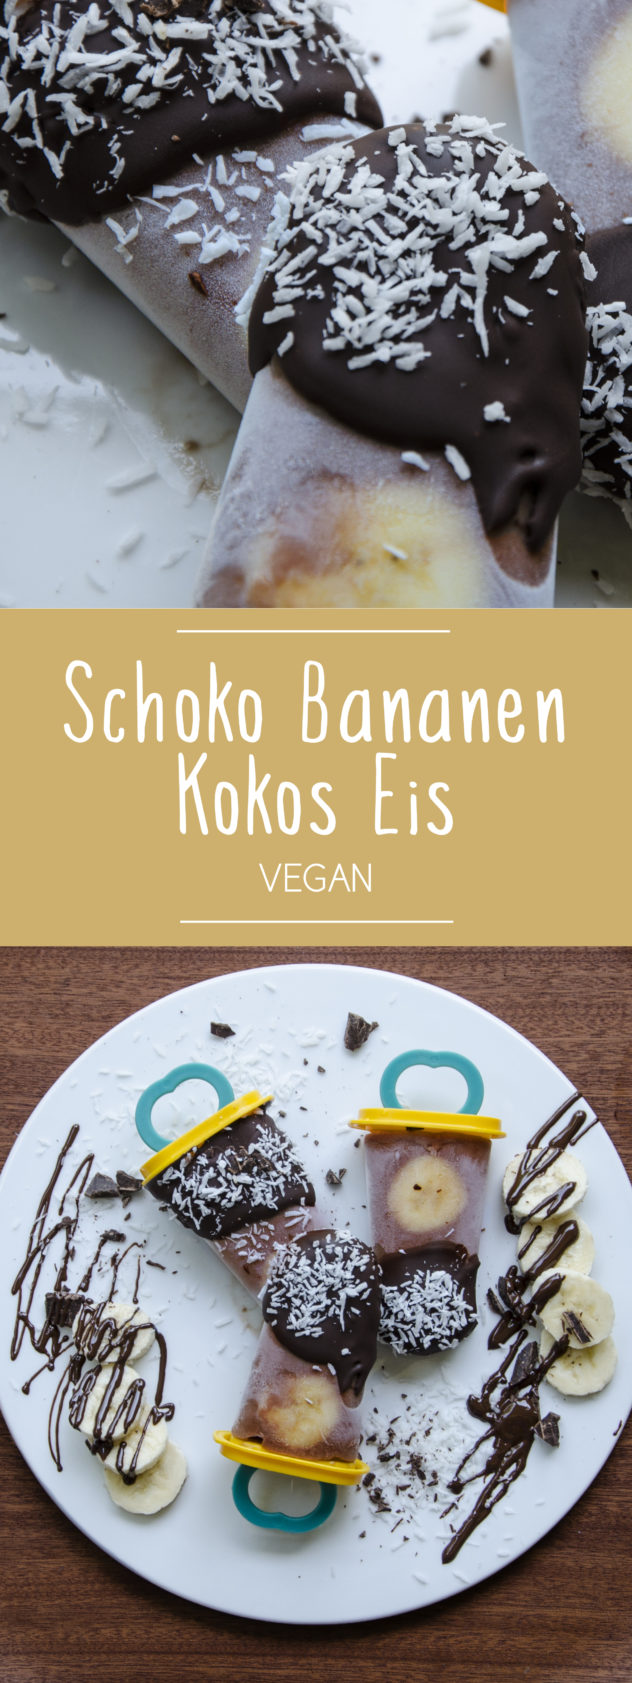 Schoko-Bananen-Kokos-Eis - Vegan, einfach und super lecker!